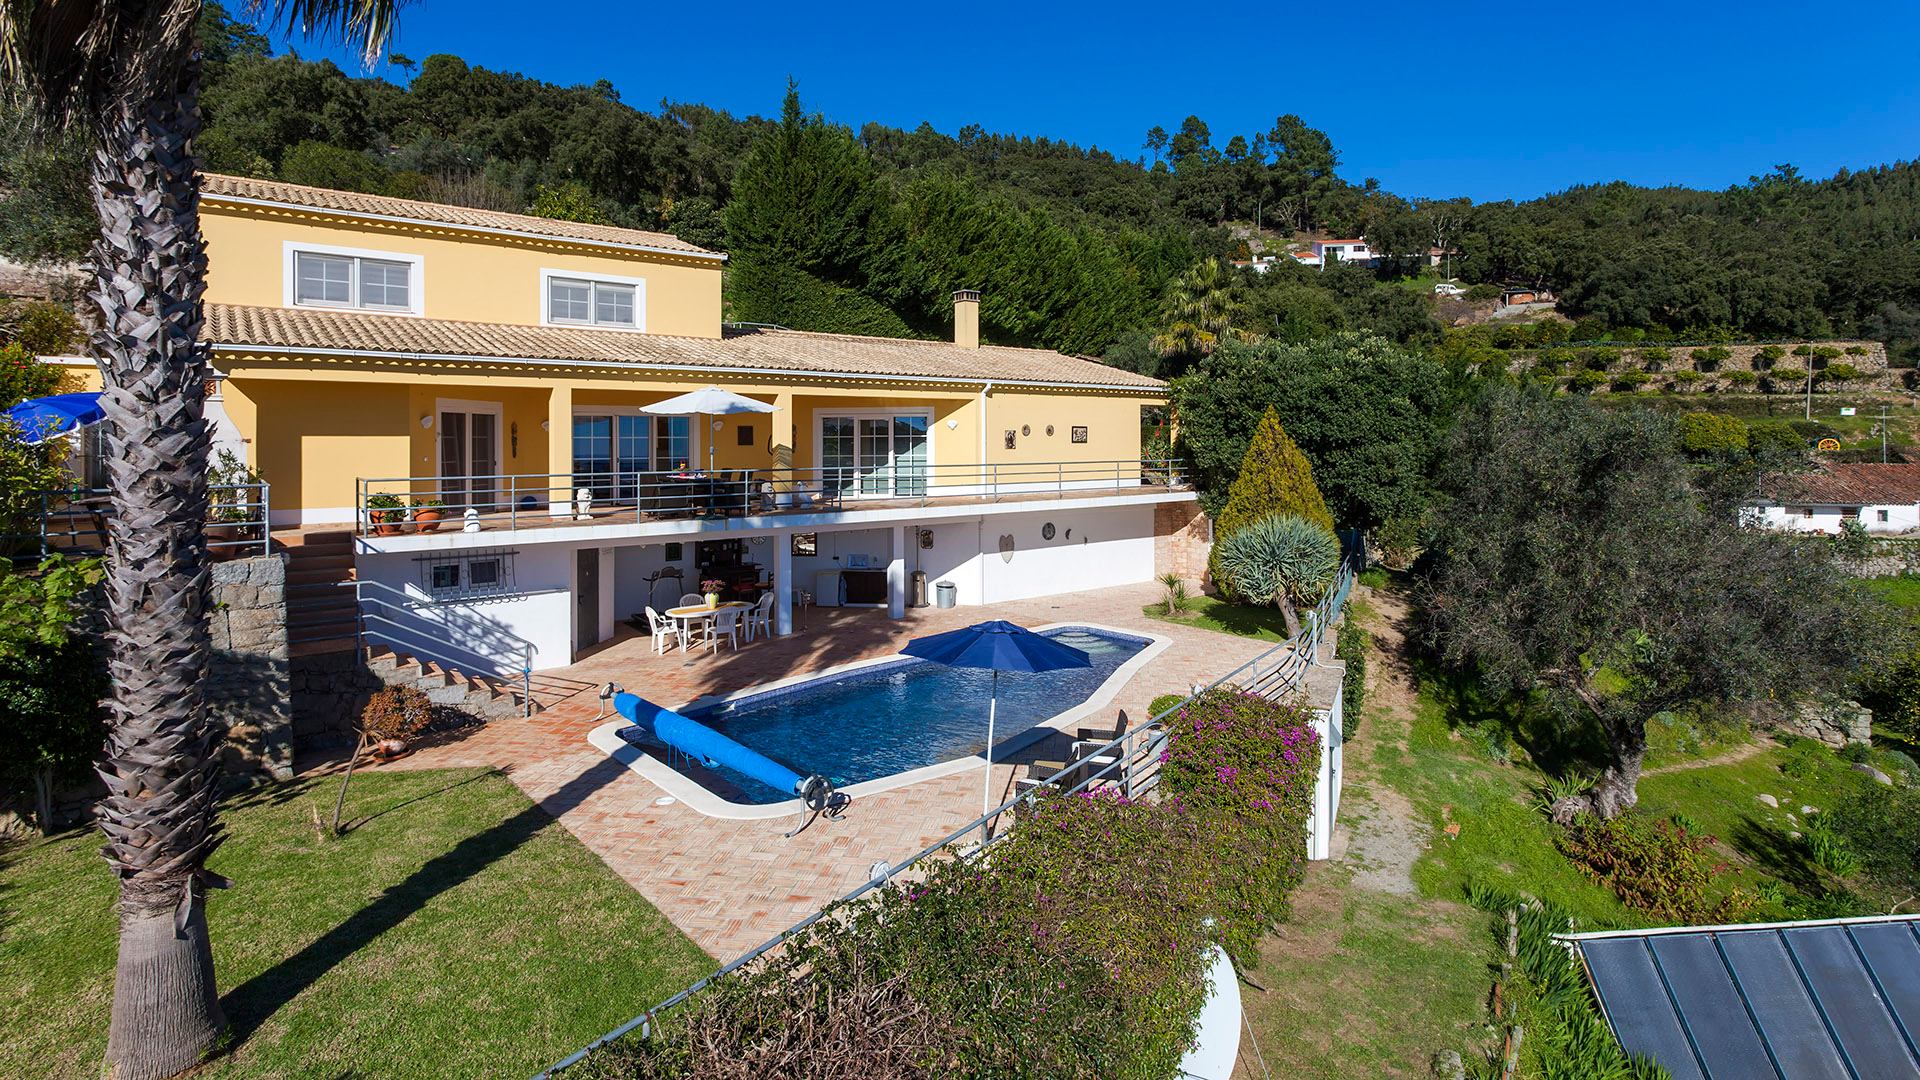 Maison de campagne de 3 chambres avec piscine à flanc de colline avec de belles vues sur la mer, Serra de Monchique | LG2001 